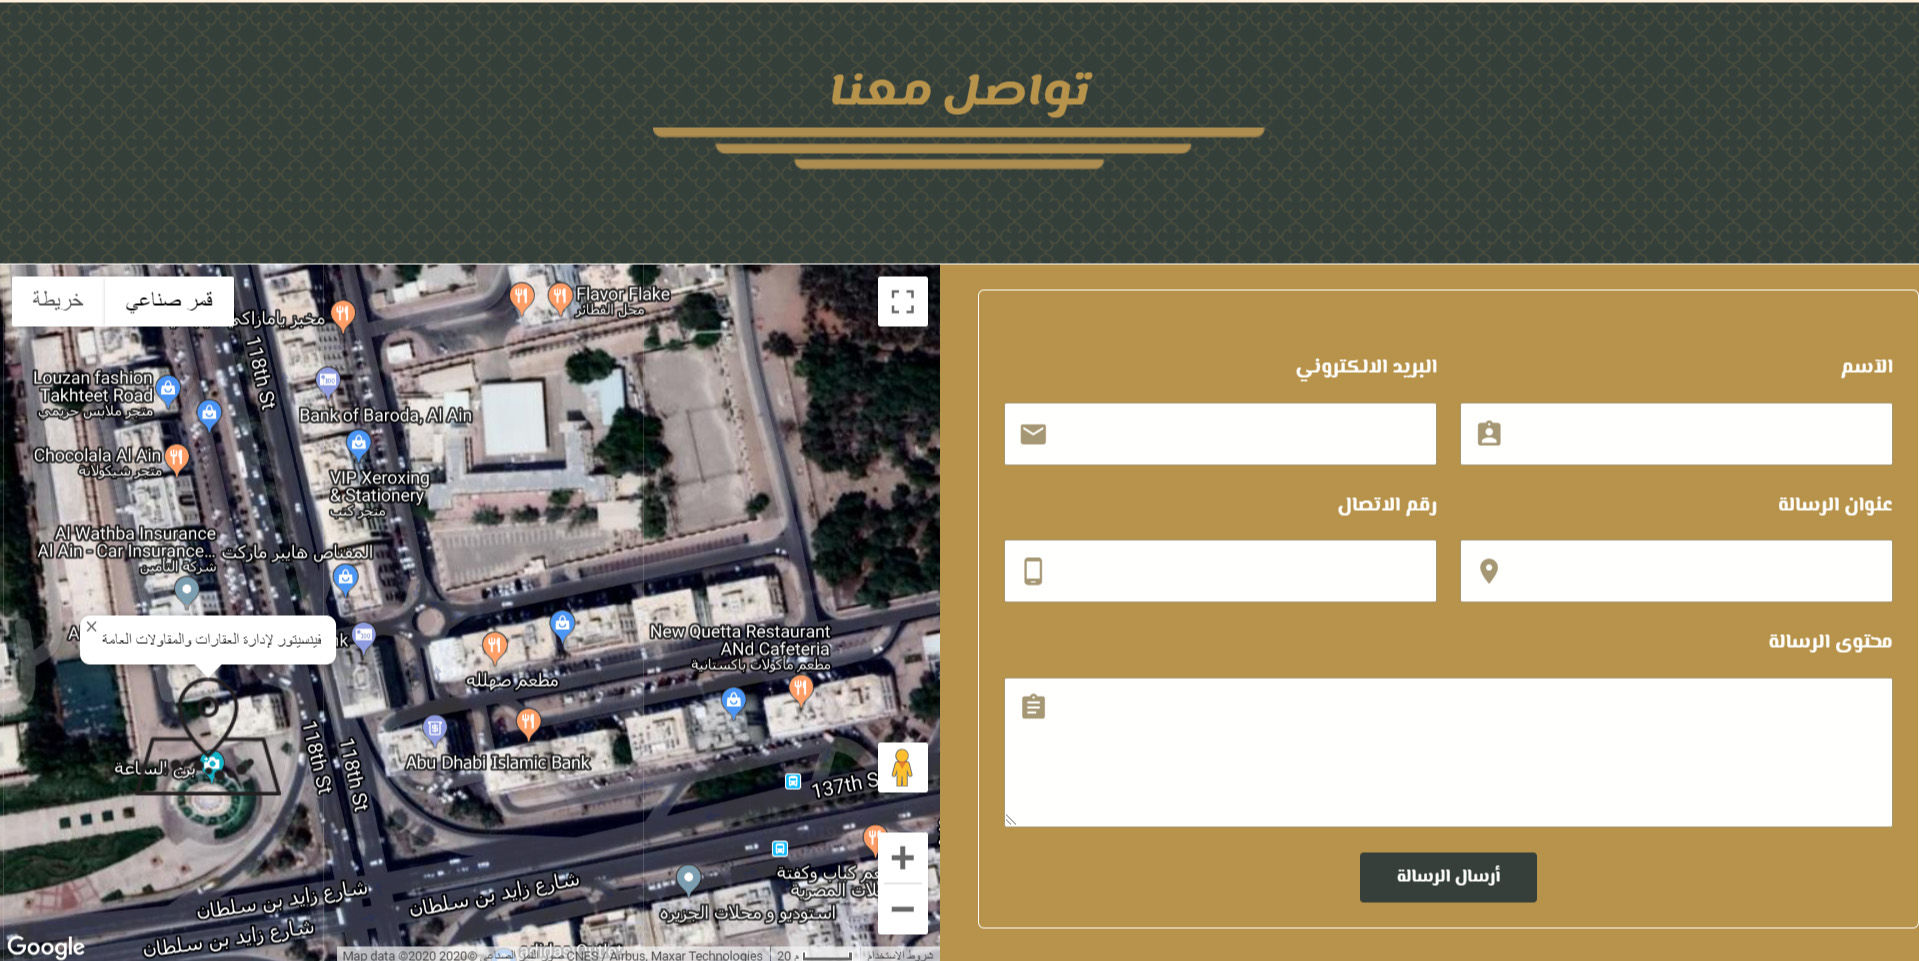 تصميم موقع الكتروني لشركة مقاولات وادارة عقارات فينسيتور في جدة السعودية